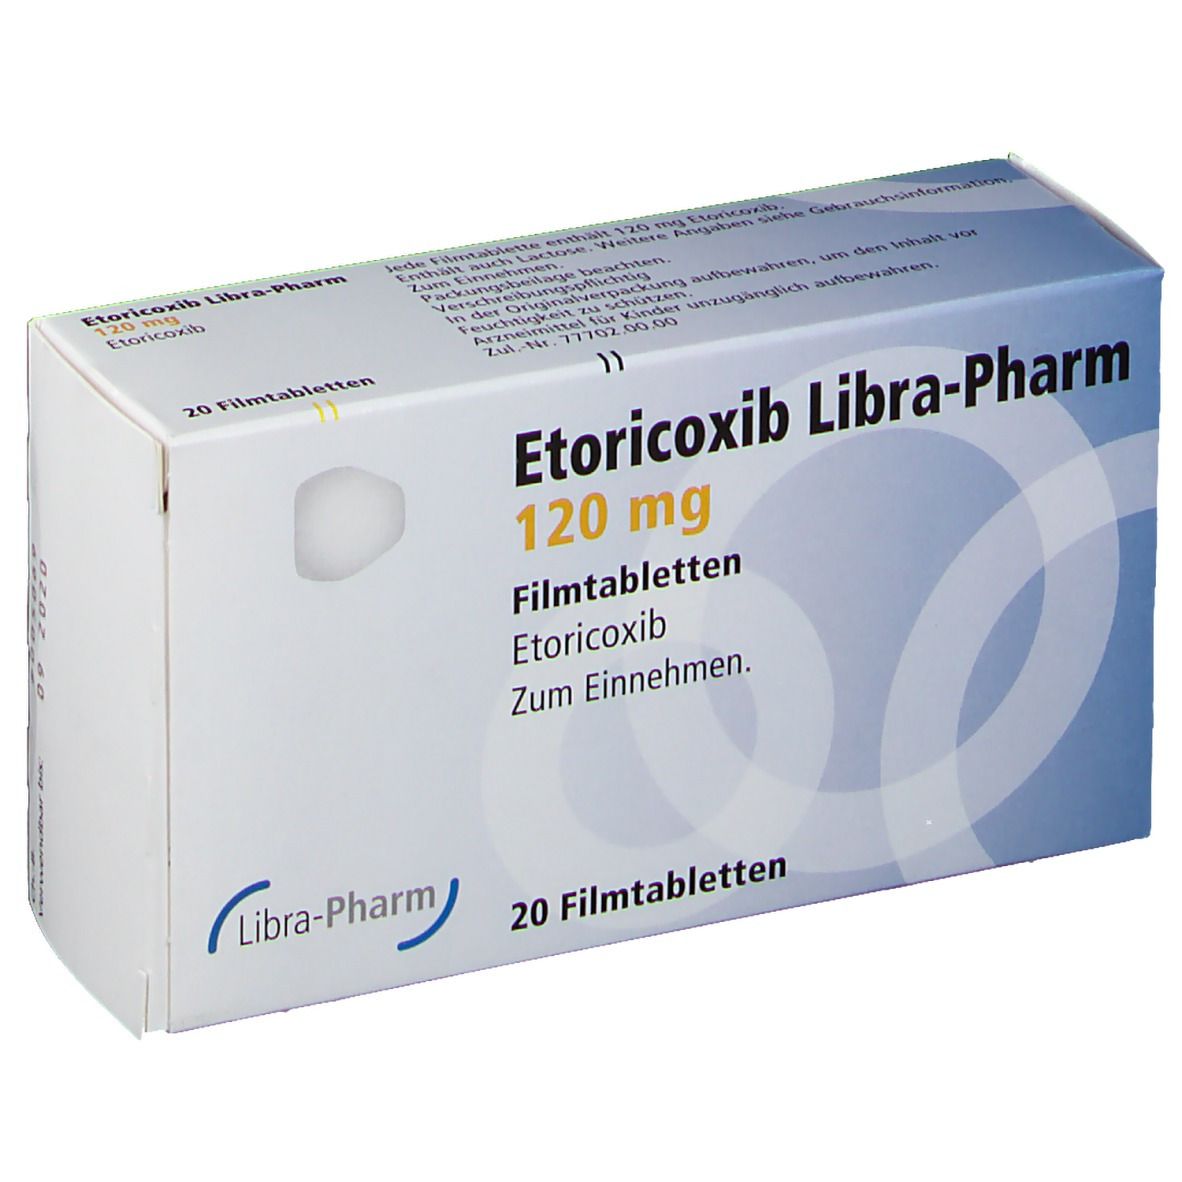 Etoricoxib Libra-Pharm 120 mg